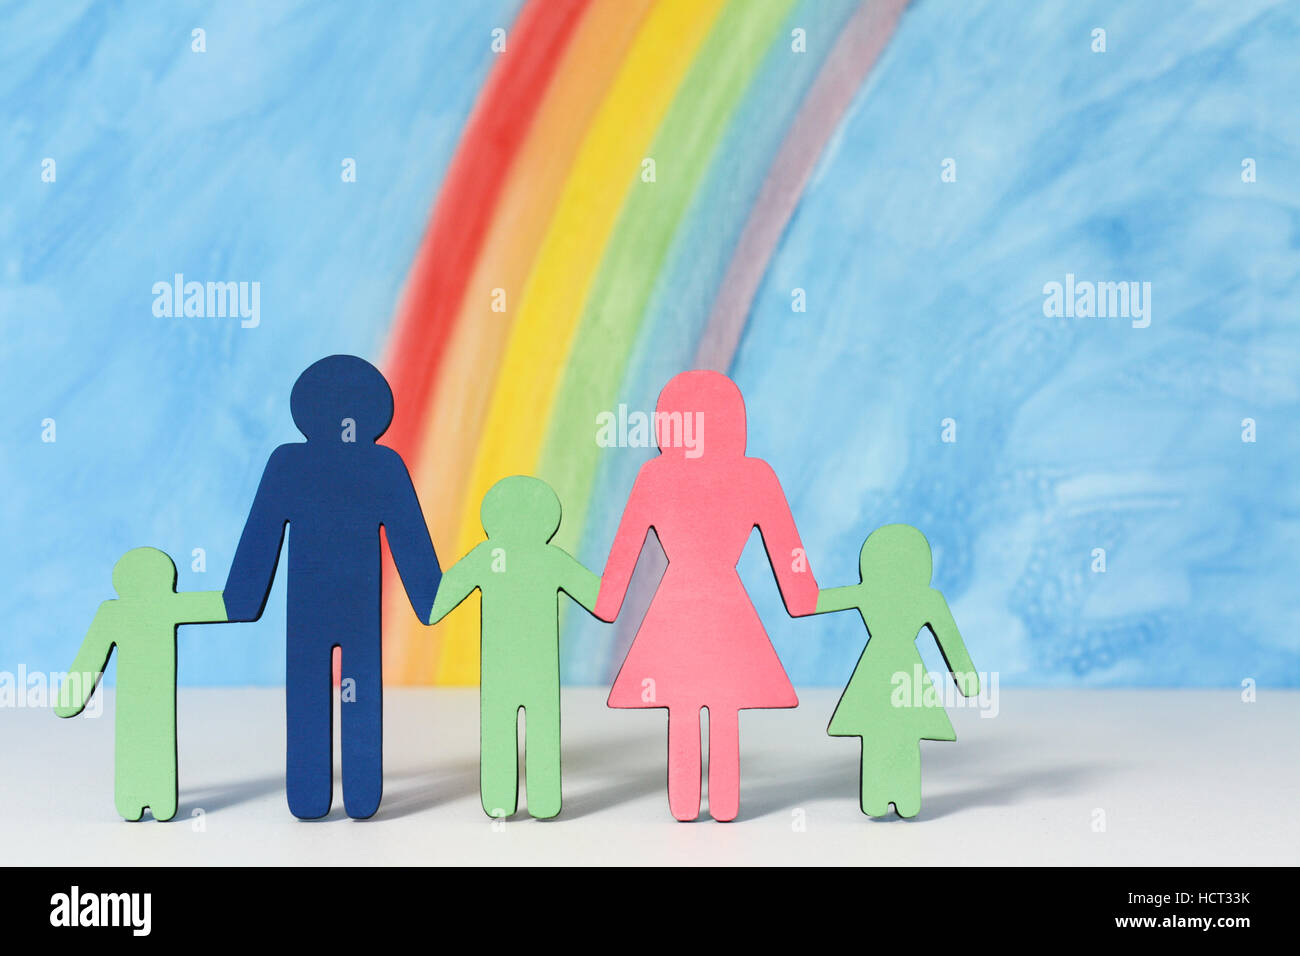 Vater, Mutter und Kinder Symbole mit einem Regenbogen und blauer Himmel zur Veranschaulichung des Konzepts der traditionellen Familie Ehe; Nahaufnahme Stockfoto